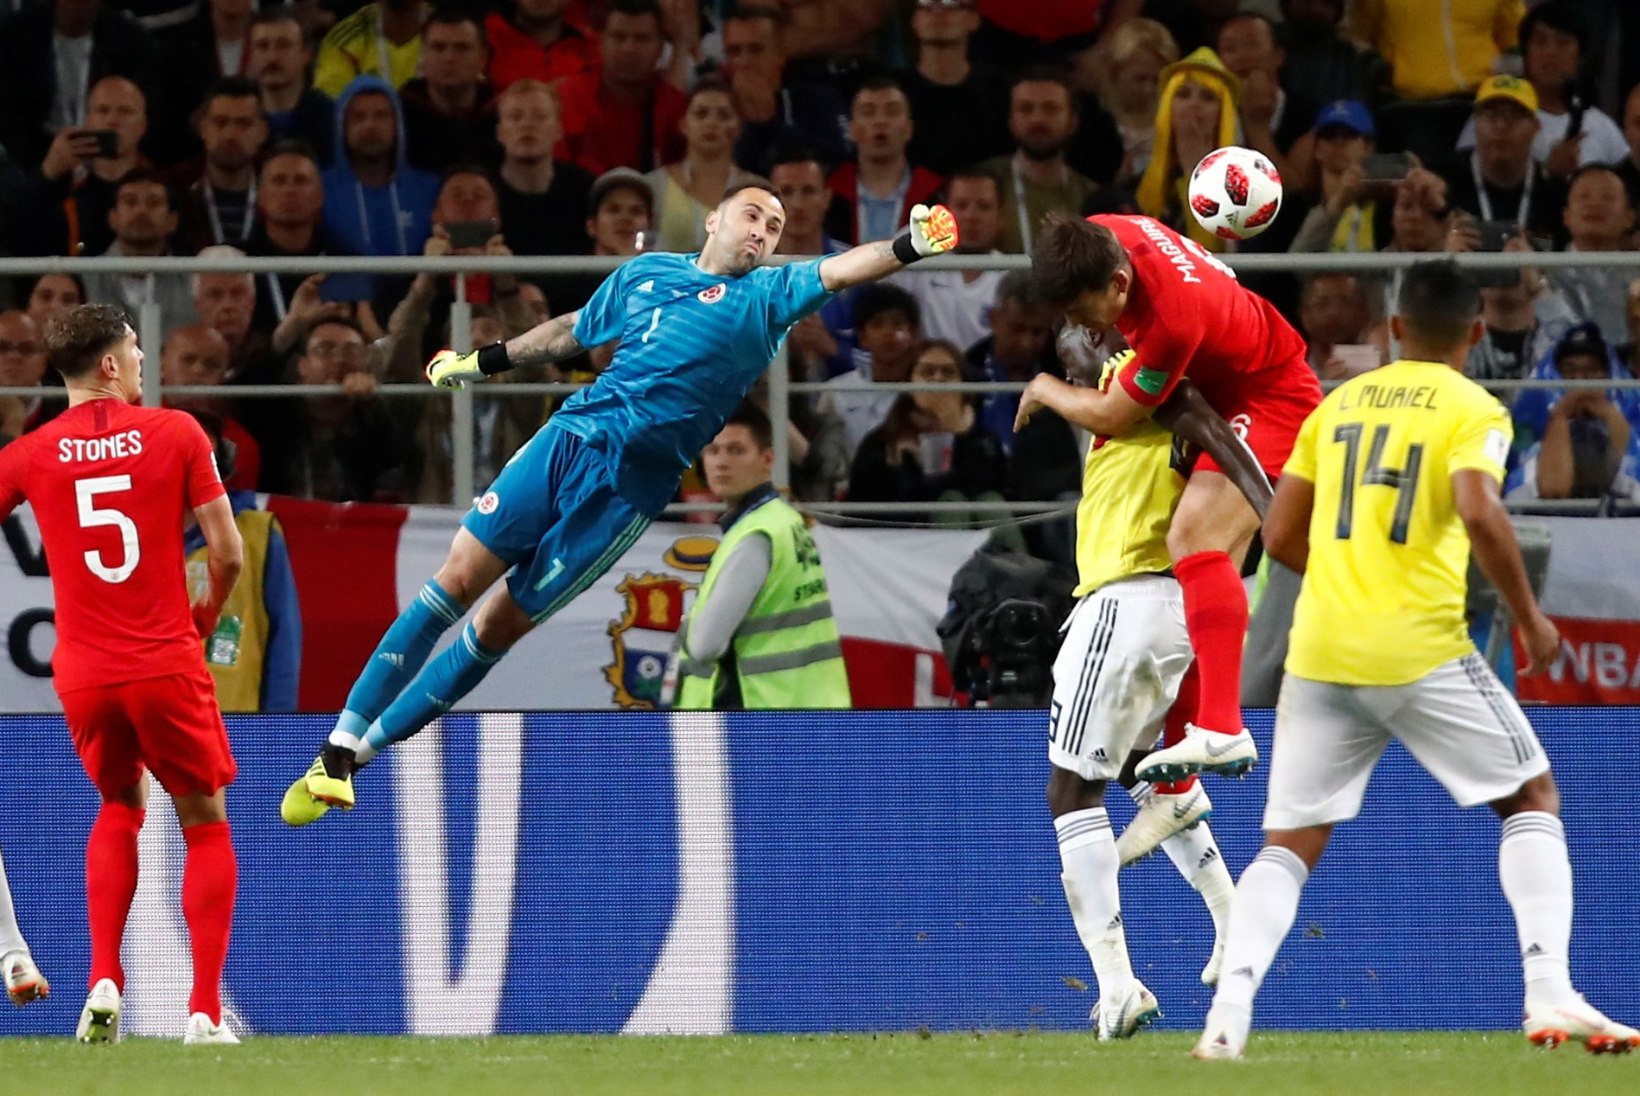 NII SEE JUHTUS | Jalgpalli MM: Inglismaa alistas penaltiseerias Kolumbia!